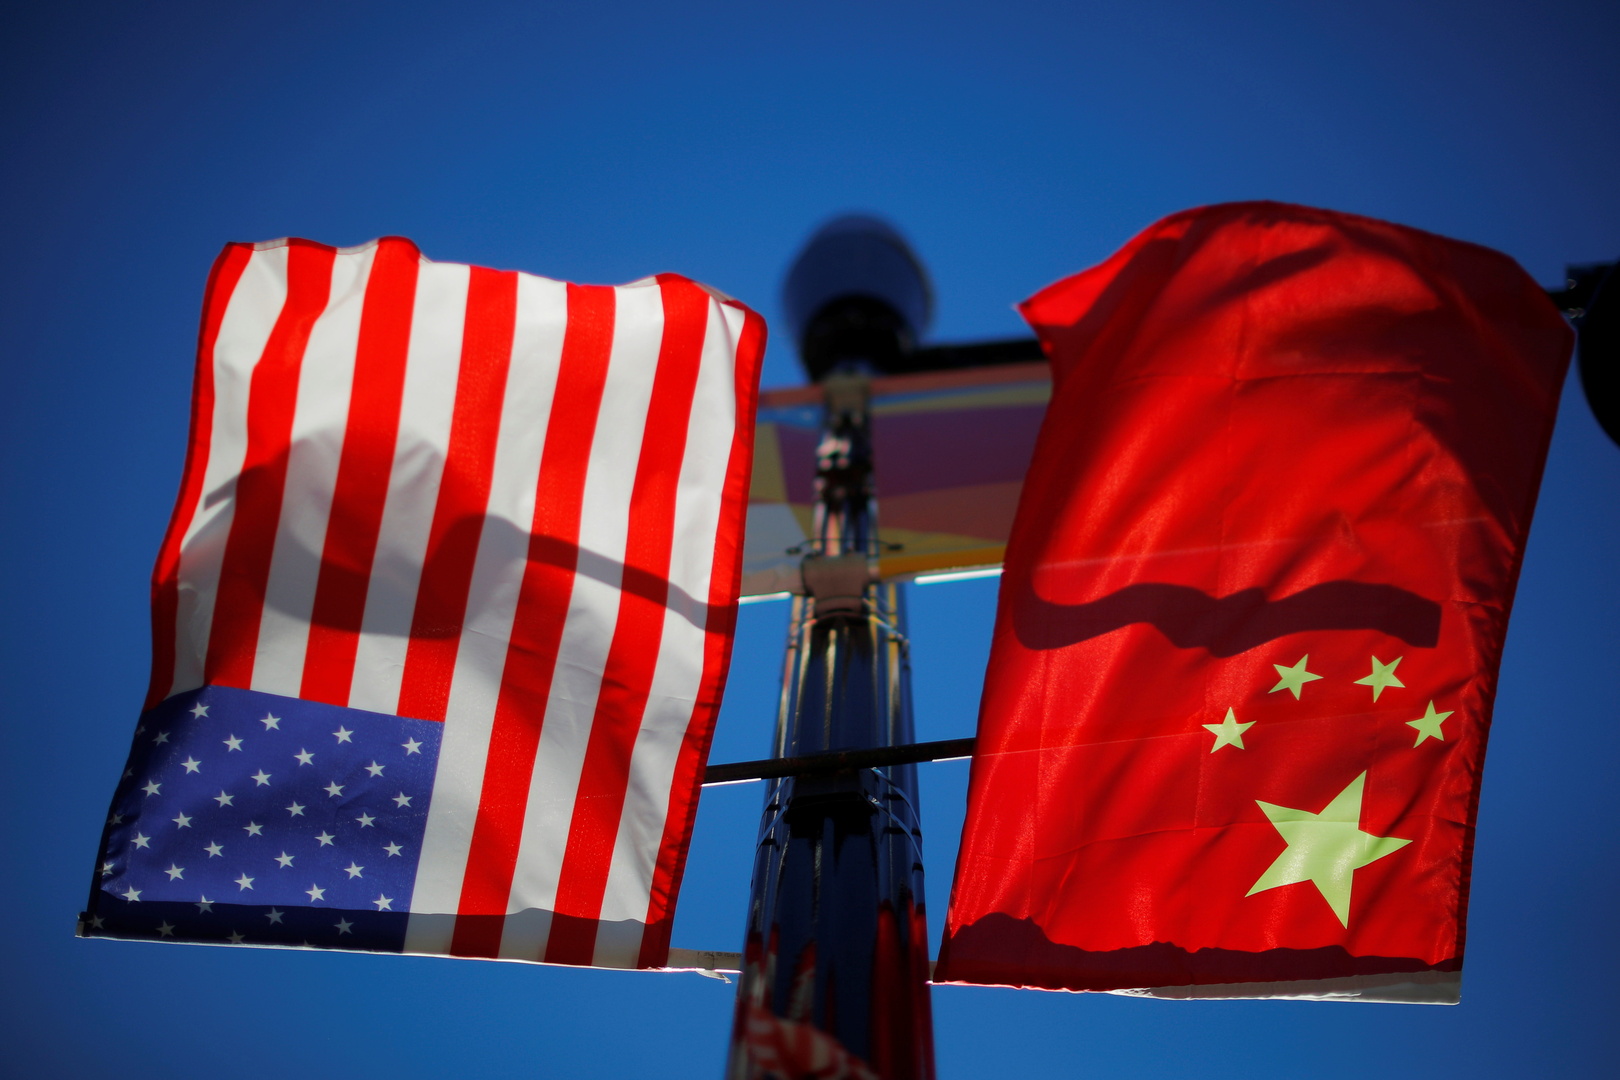 بكين: الصين والولايات المتحدة على اتصال وثيق بشأن اجتماع رئيسي البلدين